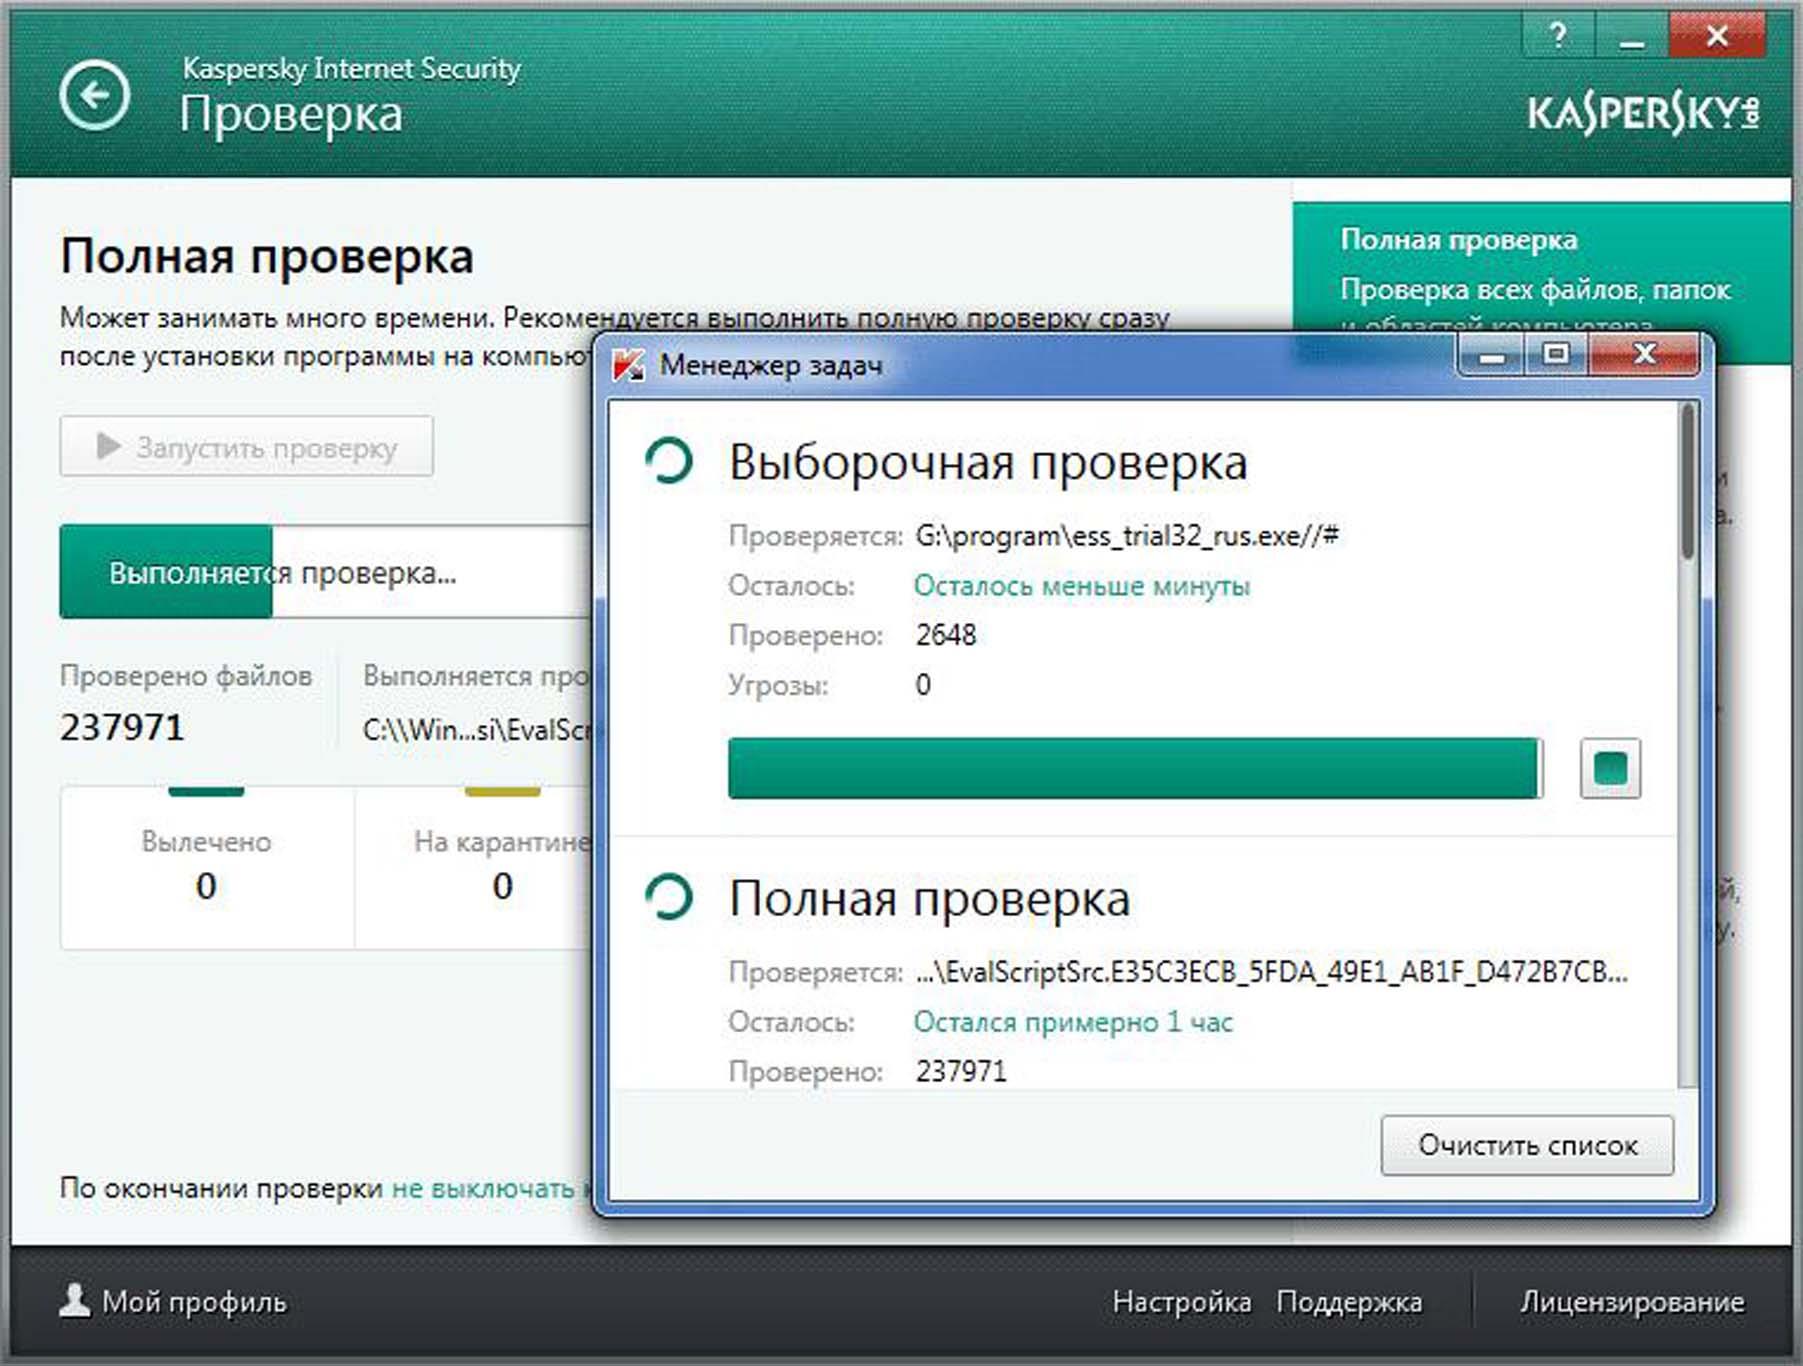 Антивирус ссылок. Антивирусная программа Kaspersky. Полная проверка компьютера на вирусы. Проверка ПК антивирусом. Проверка компьютера с помощью антивирусной программы.